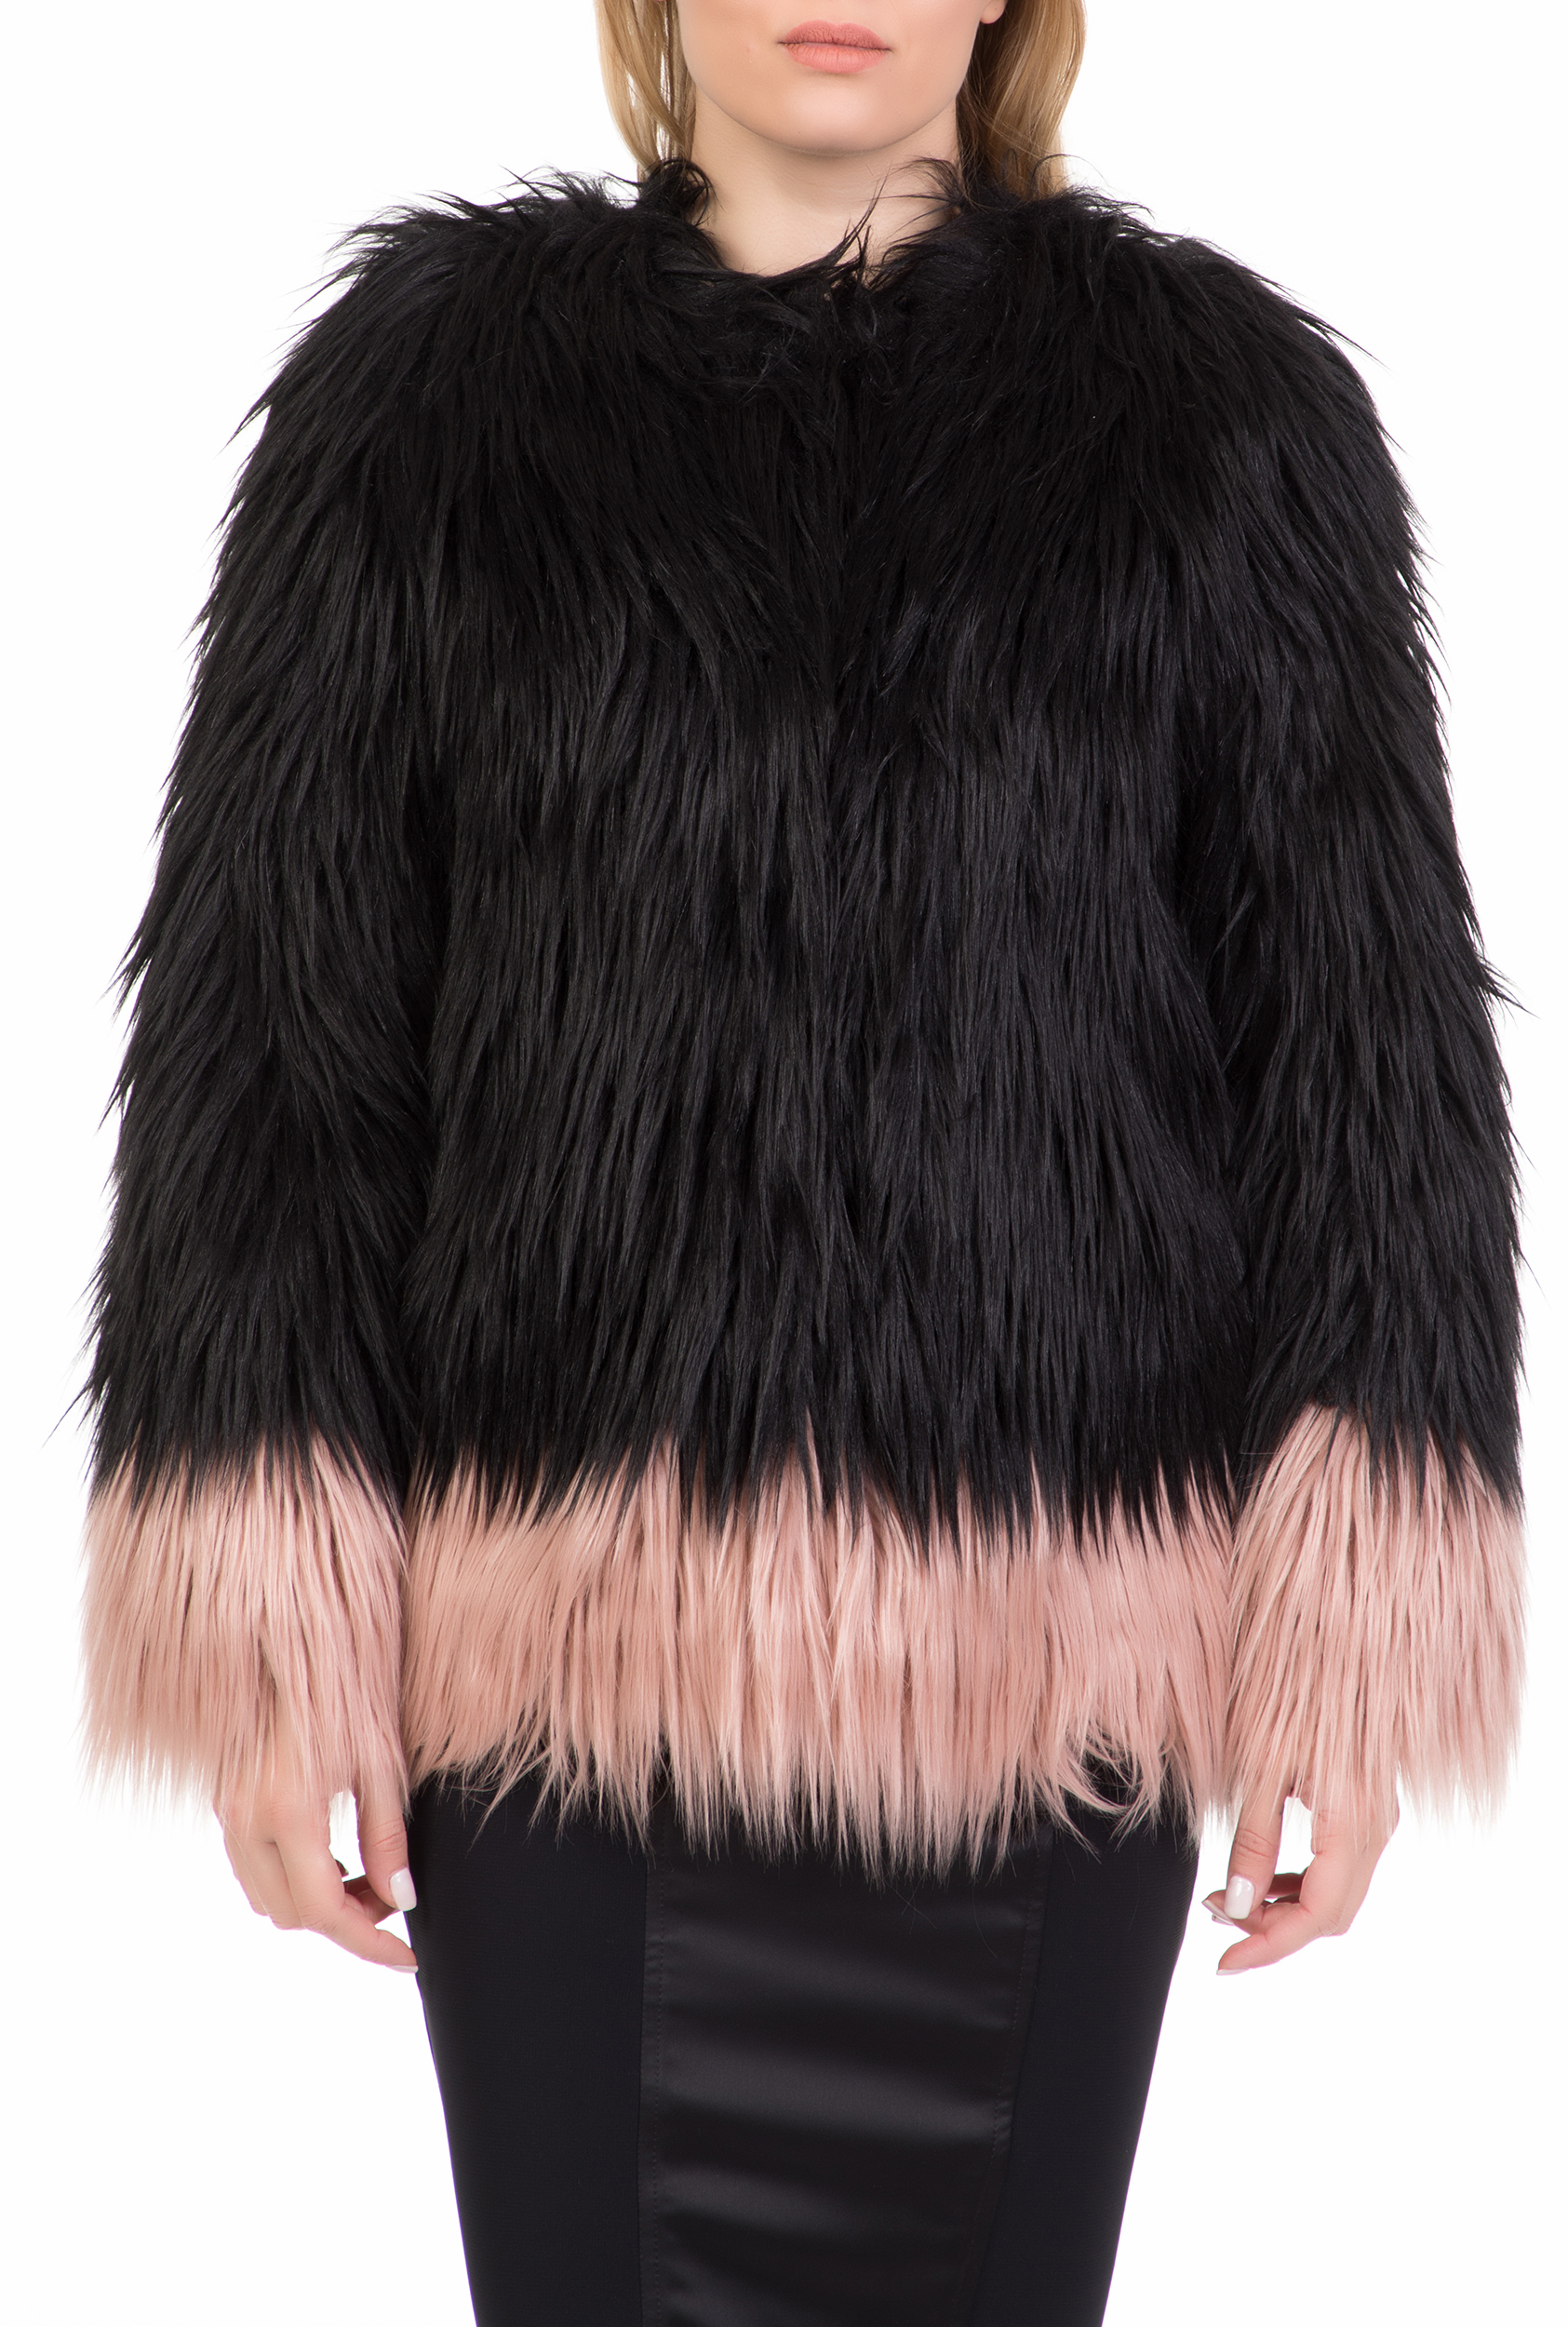 NENETTE – Γυναικείο γούνινο jacket NENETTE μαύρο-ροζ 1711251.0-0071